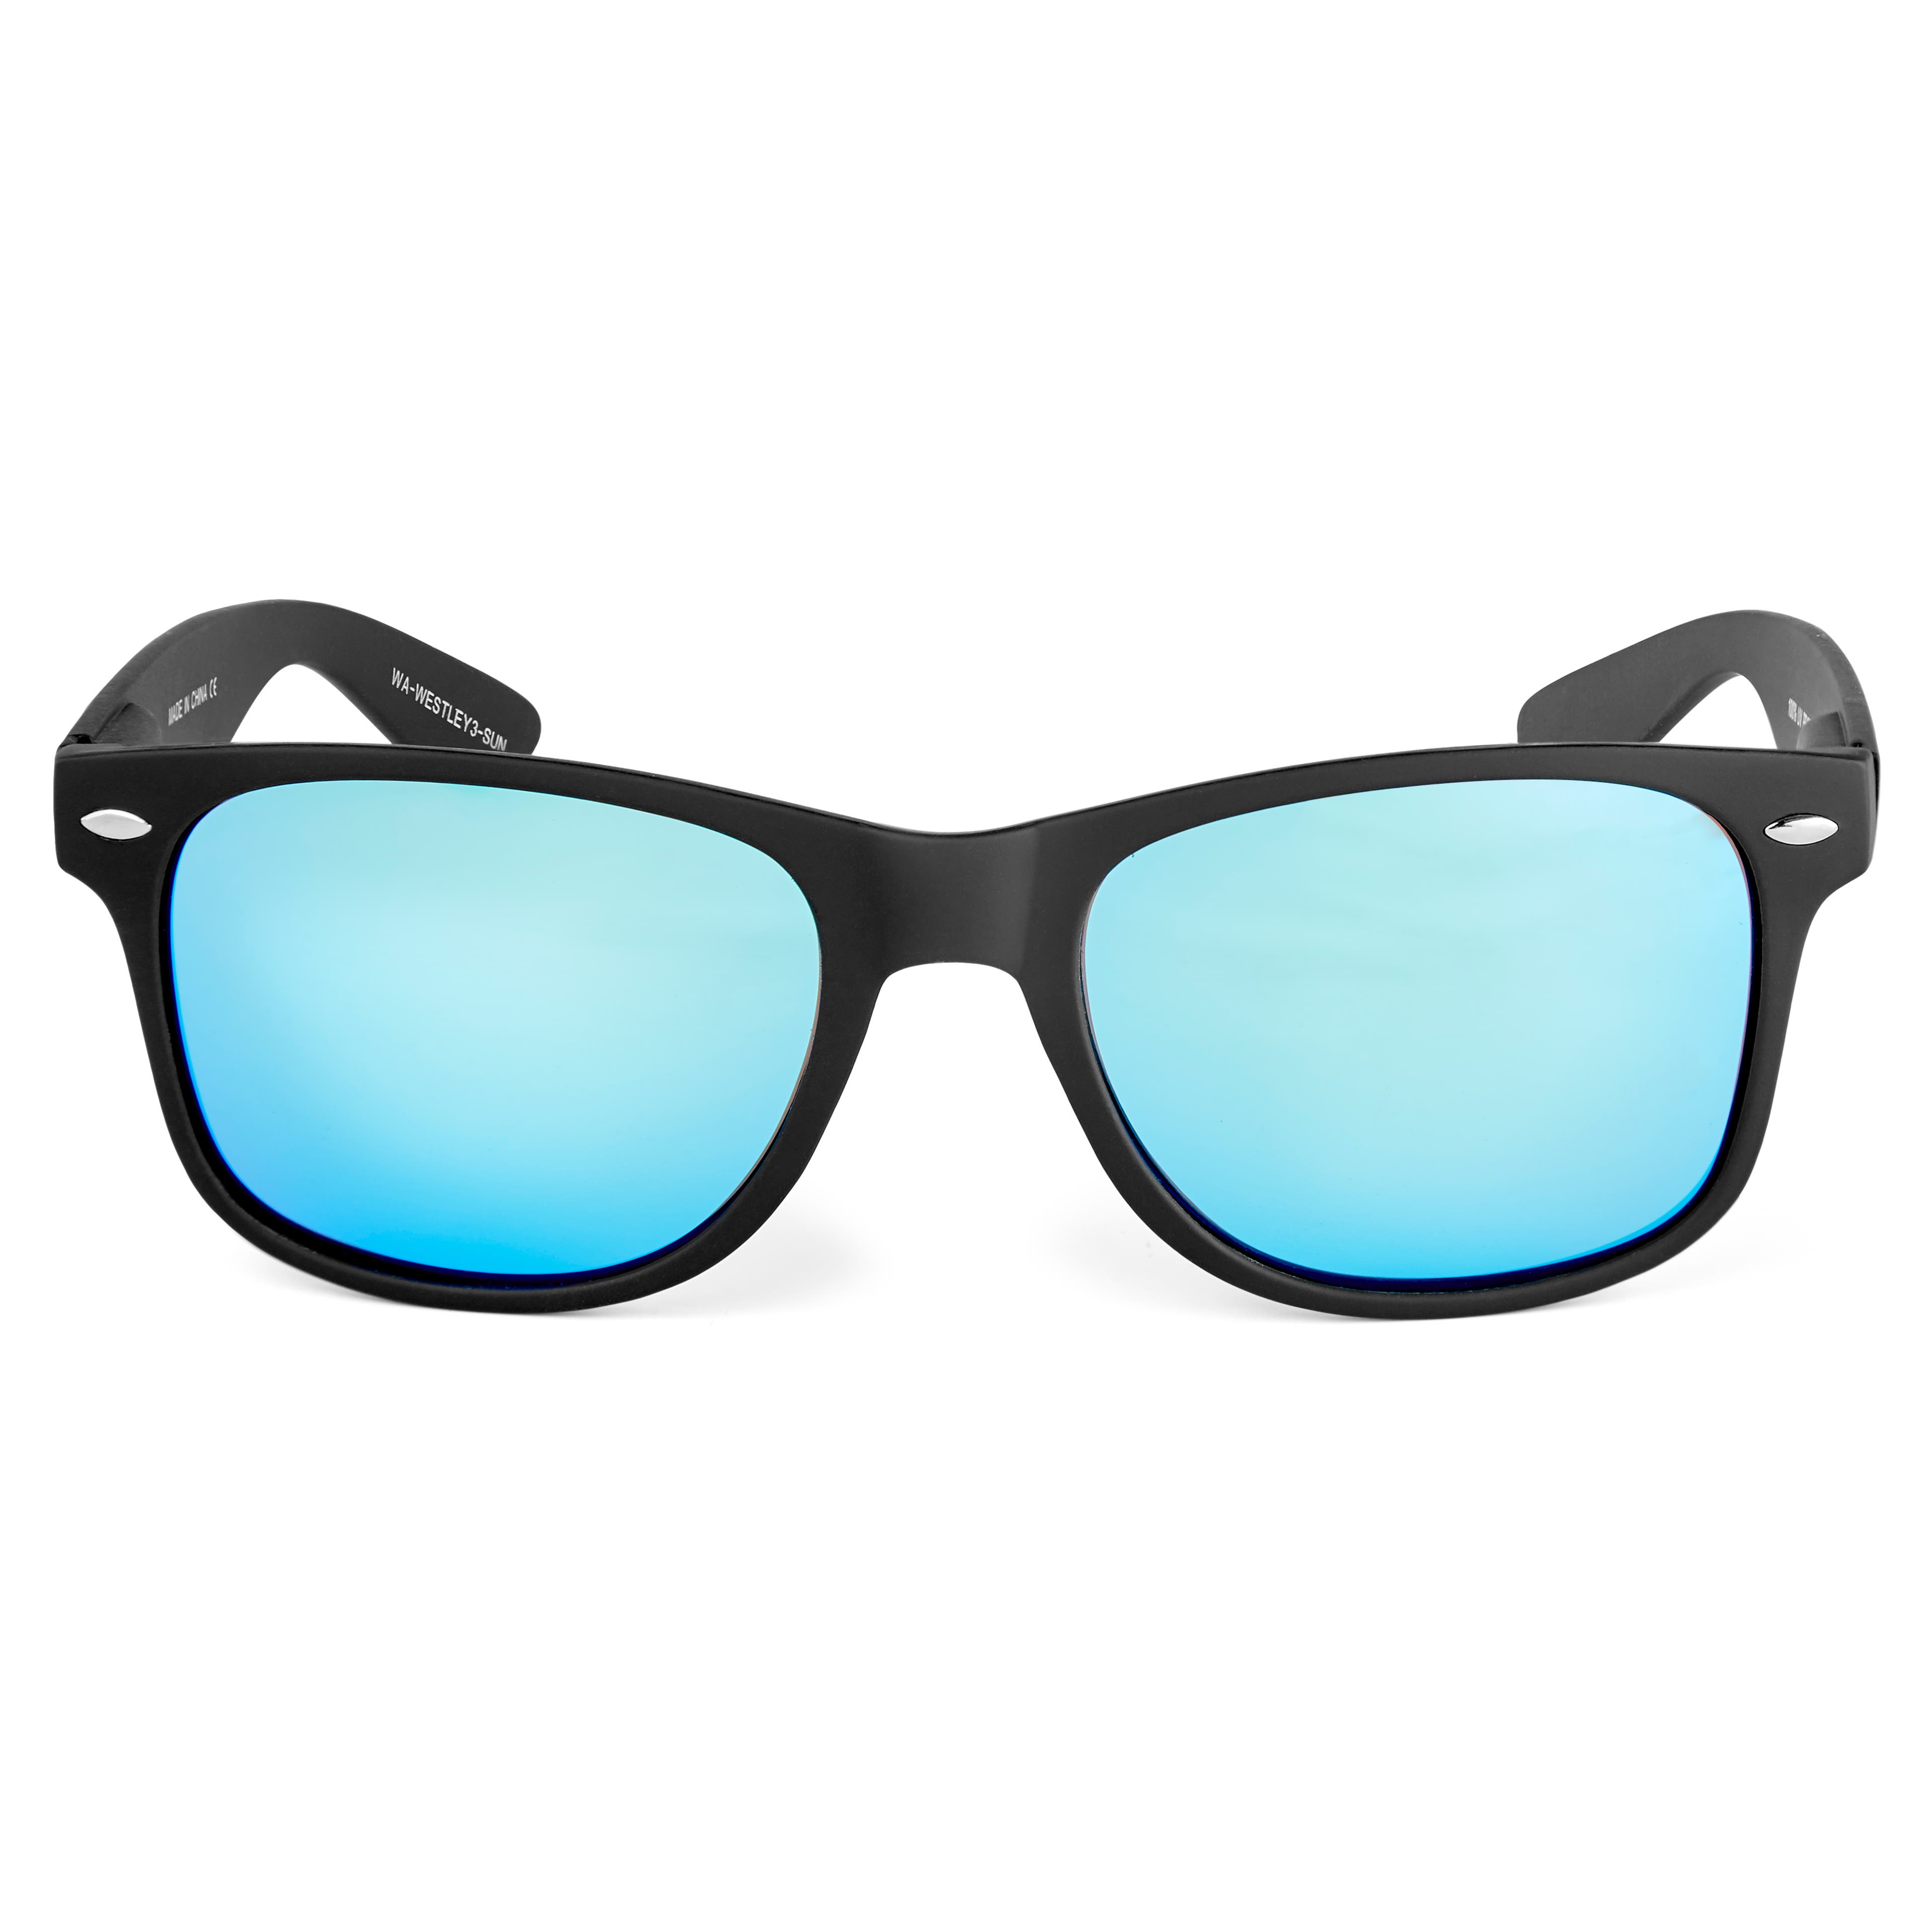 Sluneční brýle Westley modré zrcadlovky